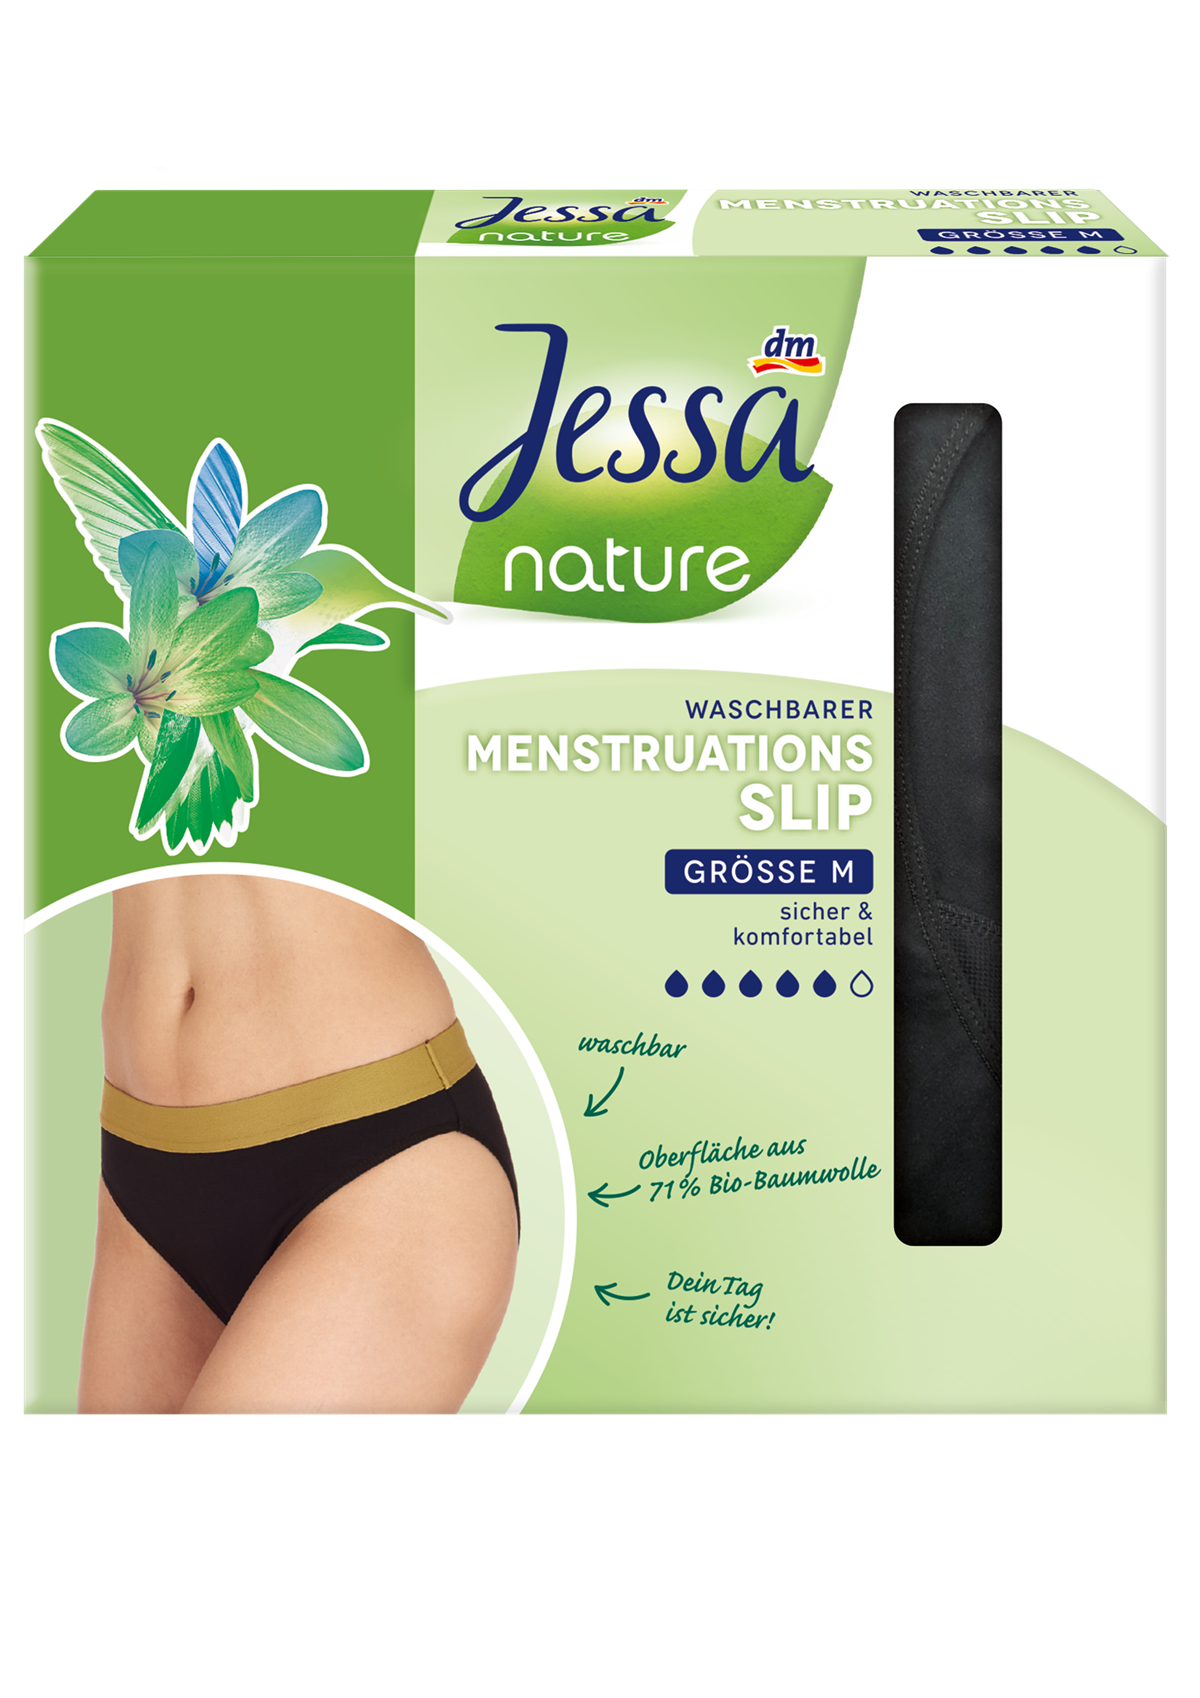 Die waschbaren Menstruationsslips von Jessa nature sind in den Größen S bis XL erhältlich (M und L in allen Filialen, S und XL auf dm.at). 1 Stk. 12,95 Euro.